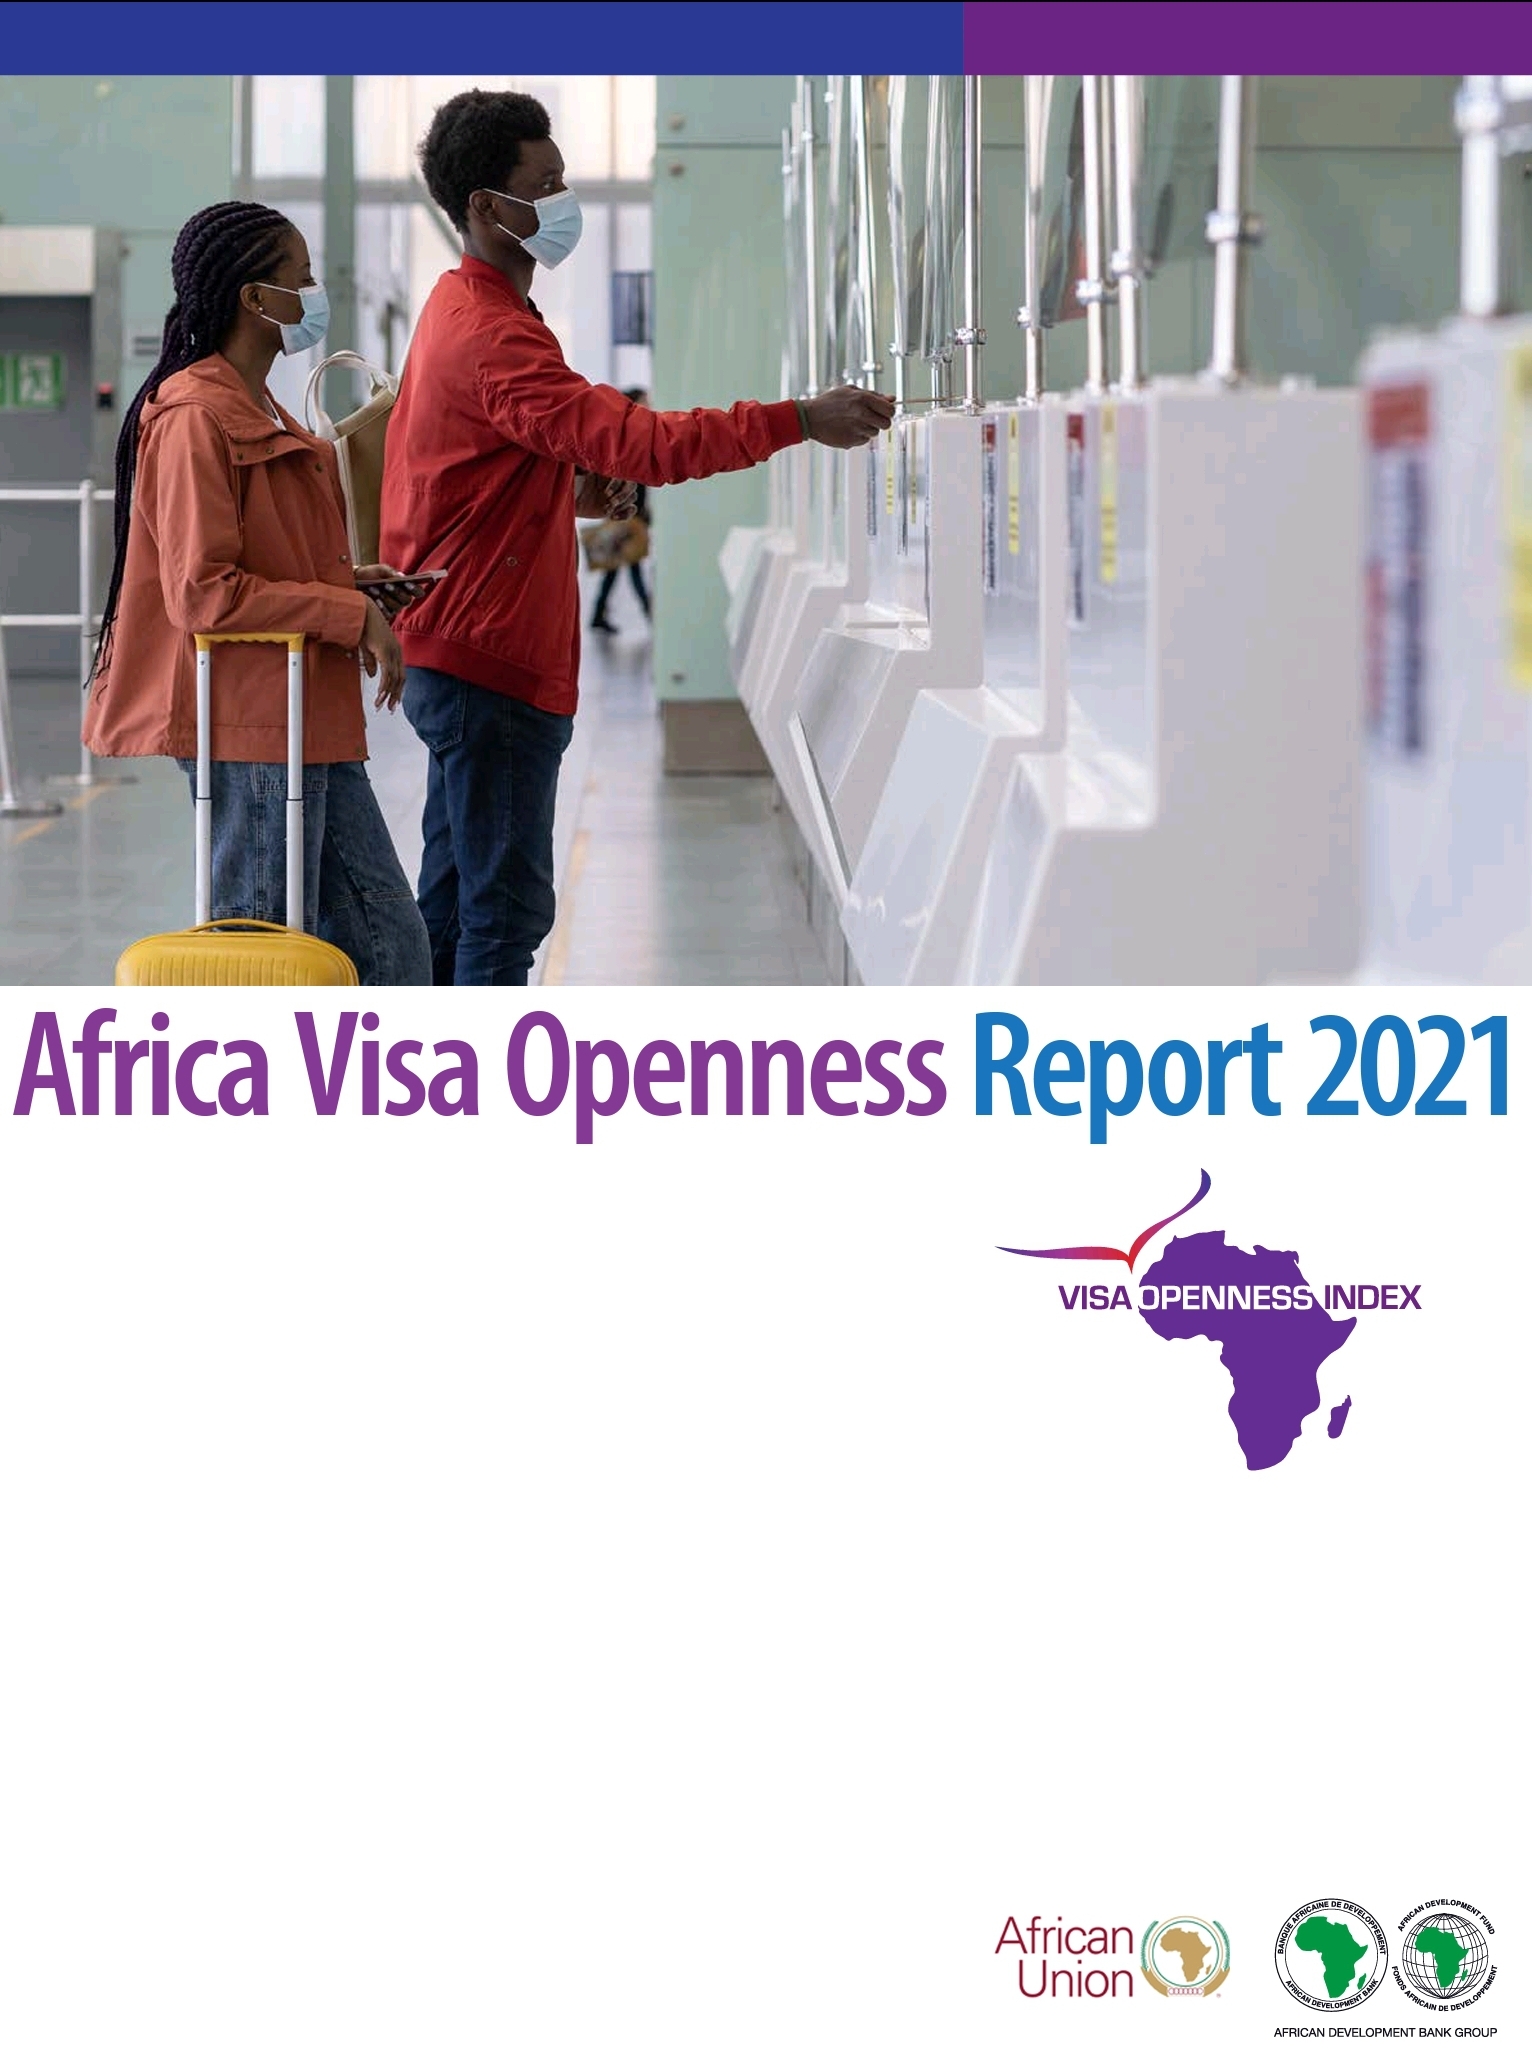 Rapport sur l’indice d’ouverture sur les visas en Afrique